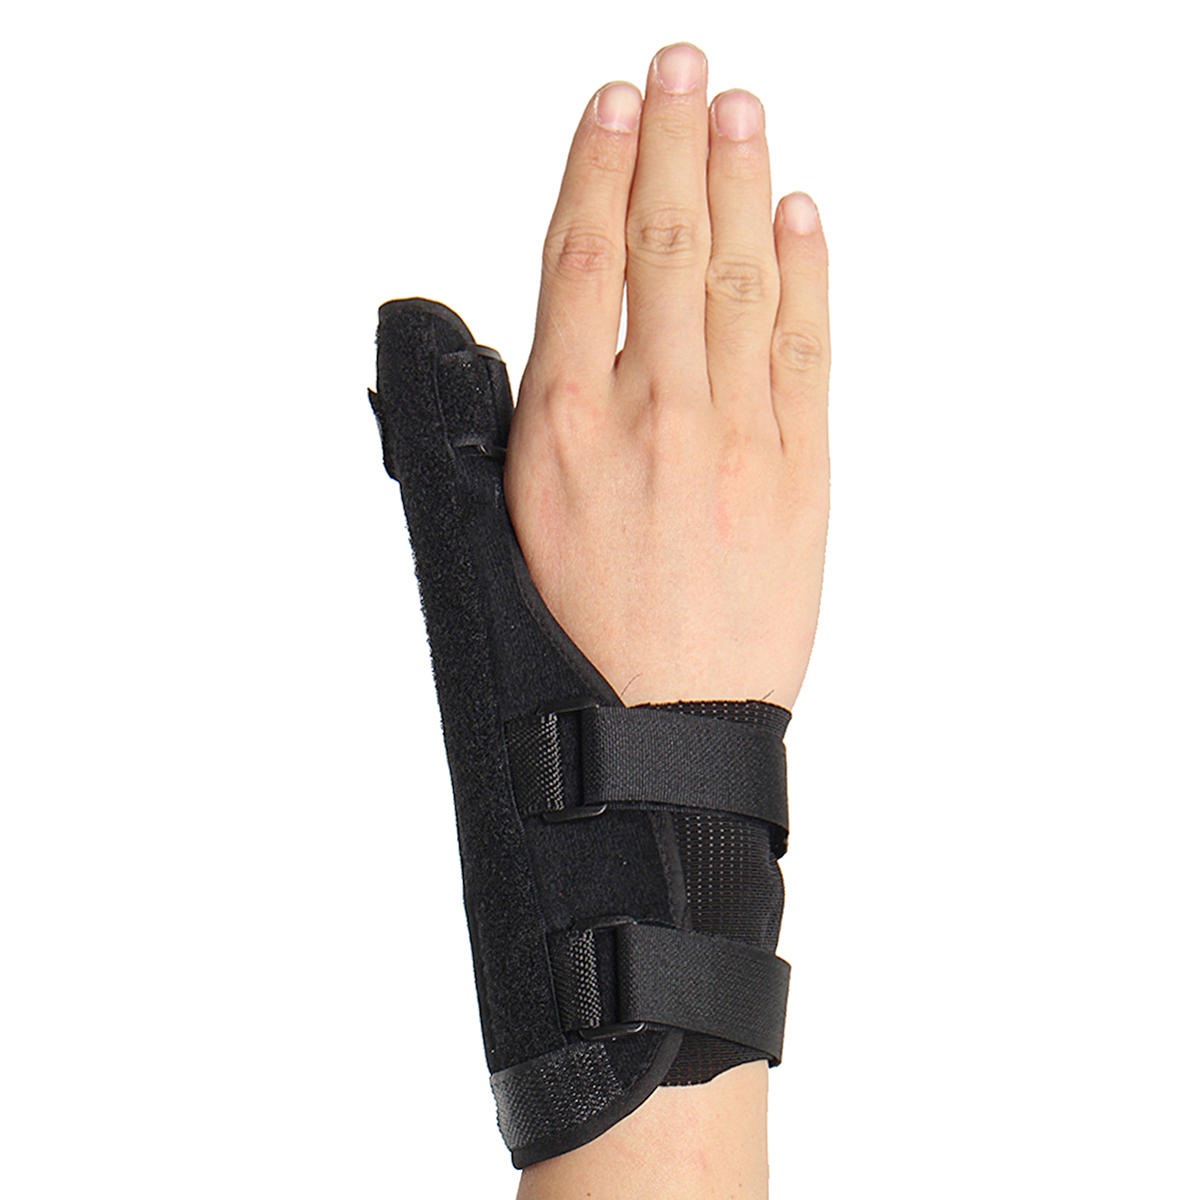 

Поддержка большого пальца Spica Wrist Splint Brace Поддержка Спортивный ремень стабилизатор Поддержка артрита травмы пал